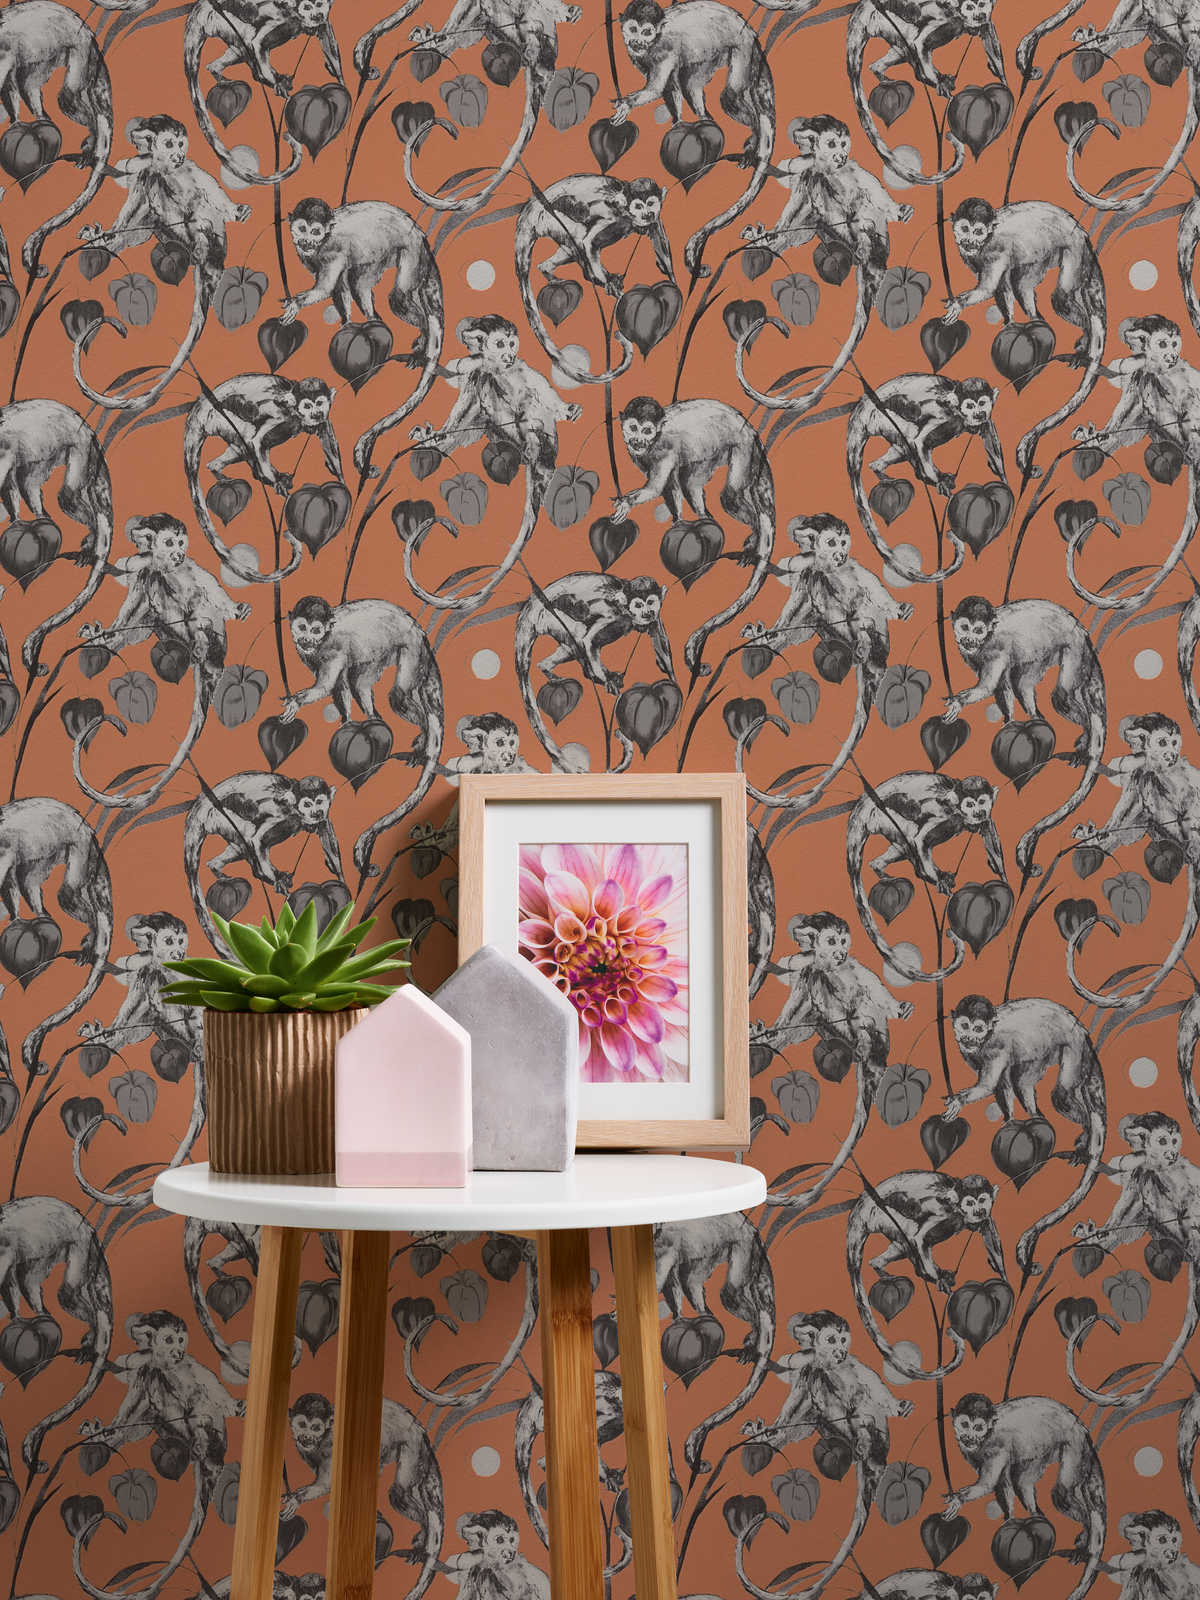             MICHALSKY Tapete Affen & Dschungel Motiv – Orange, Grau
        